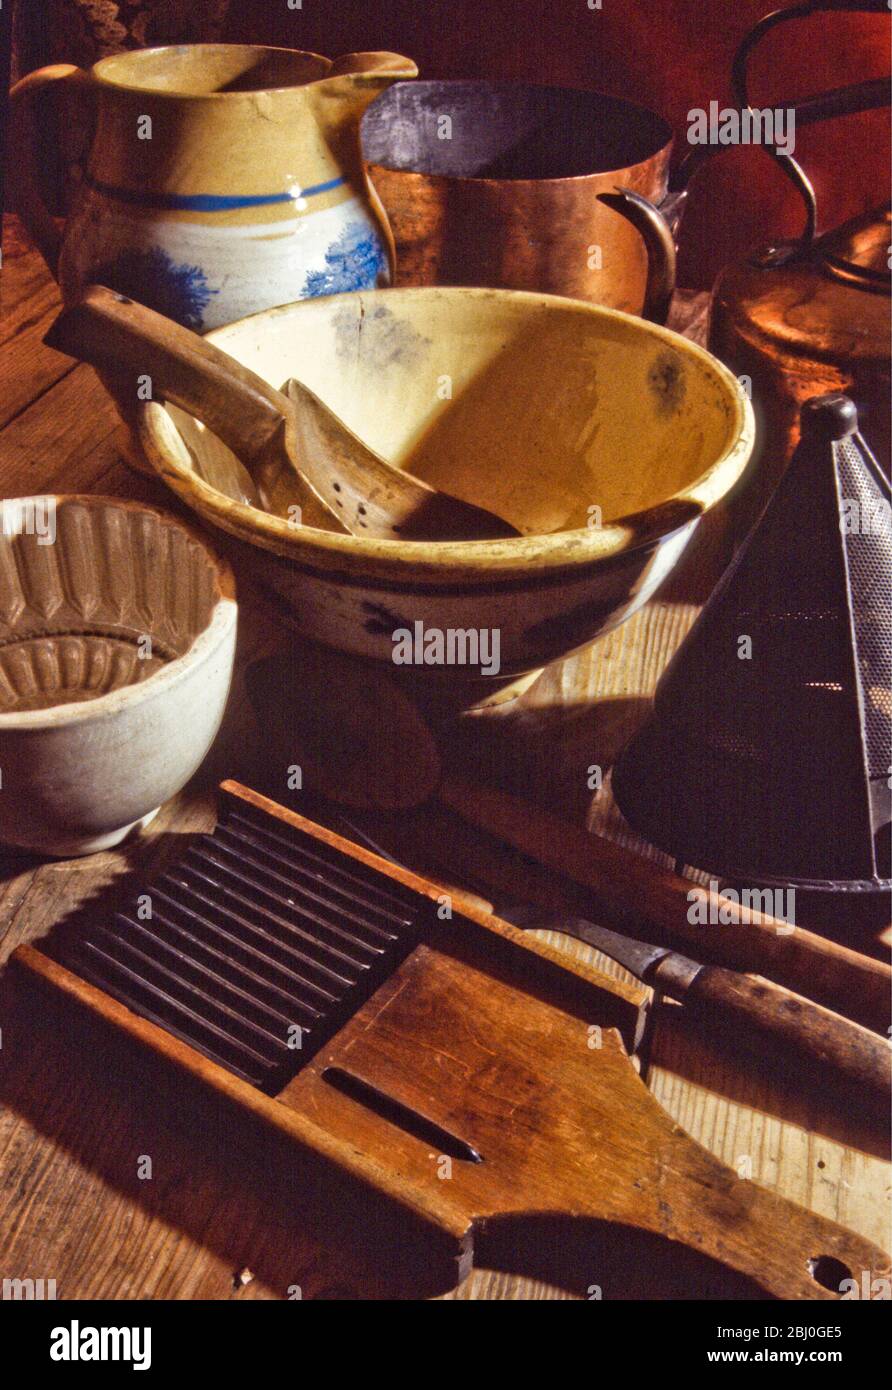 Une collection de cuisinalia anciens et anciens, d'outils et d'équipements, y compris des tasses, des bols, des moules, des grilles, des casseroles et des bouilloire en chine, métal et cuivre. - Banque D'Images